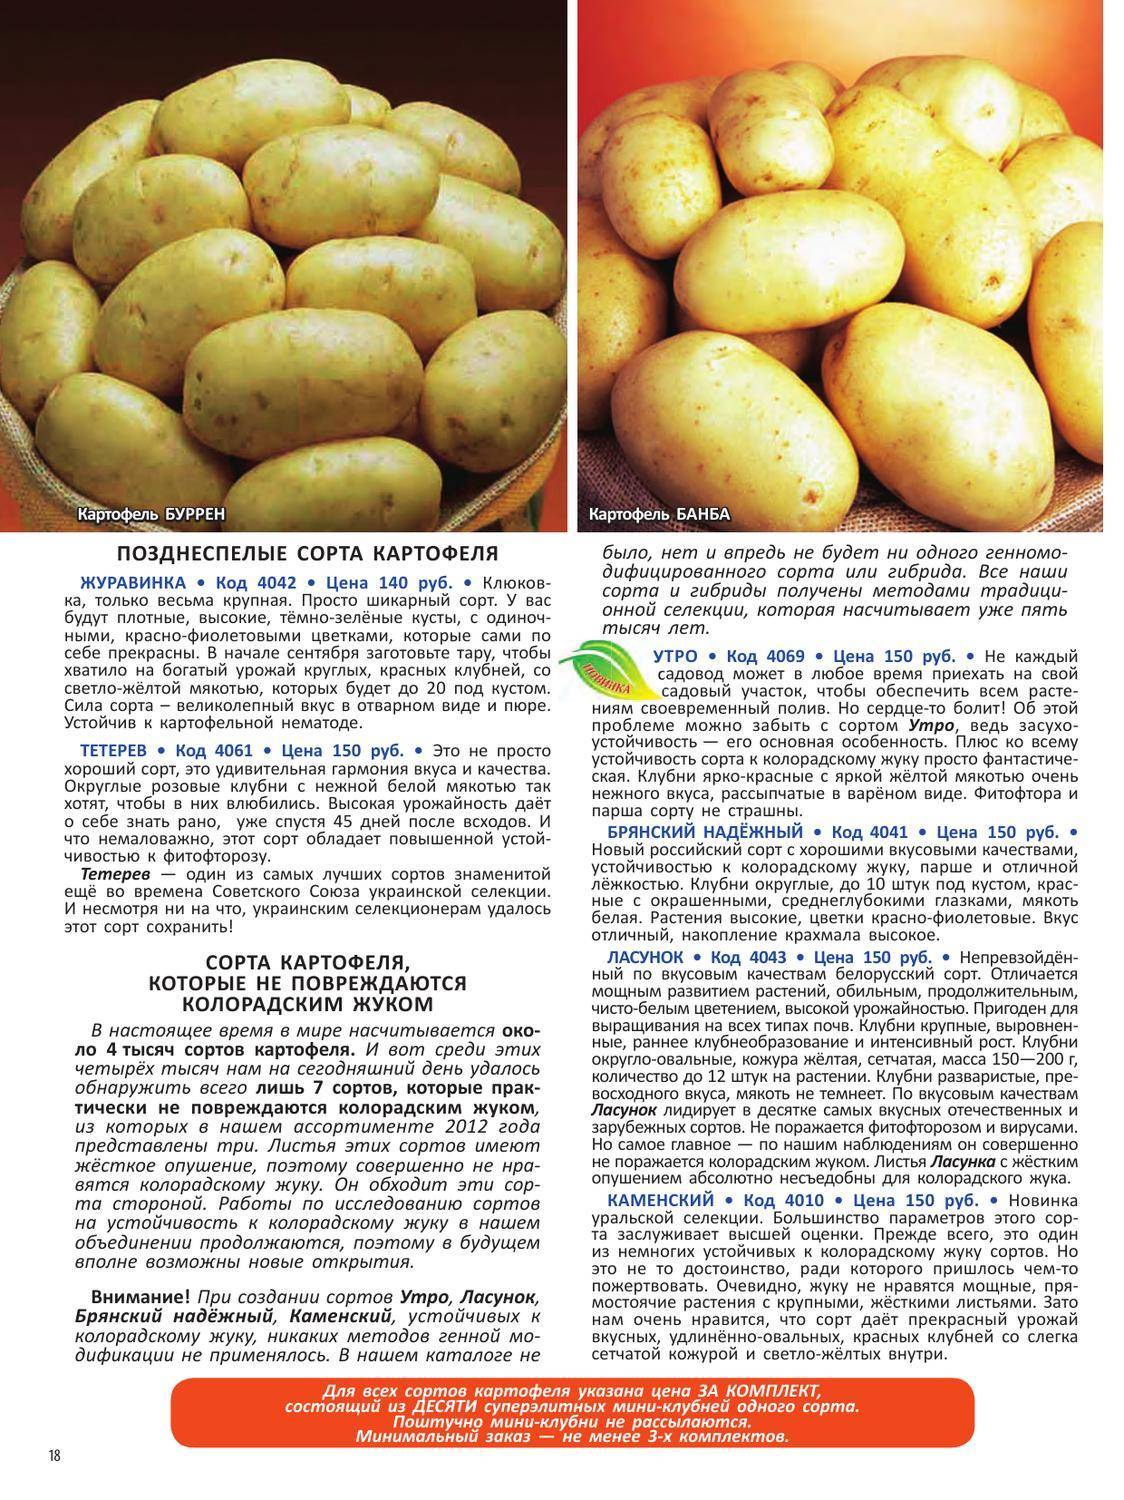 Характеристика сортов картофеля и особенности их выращивания